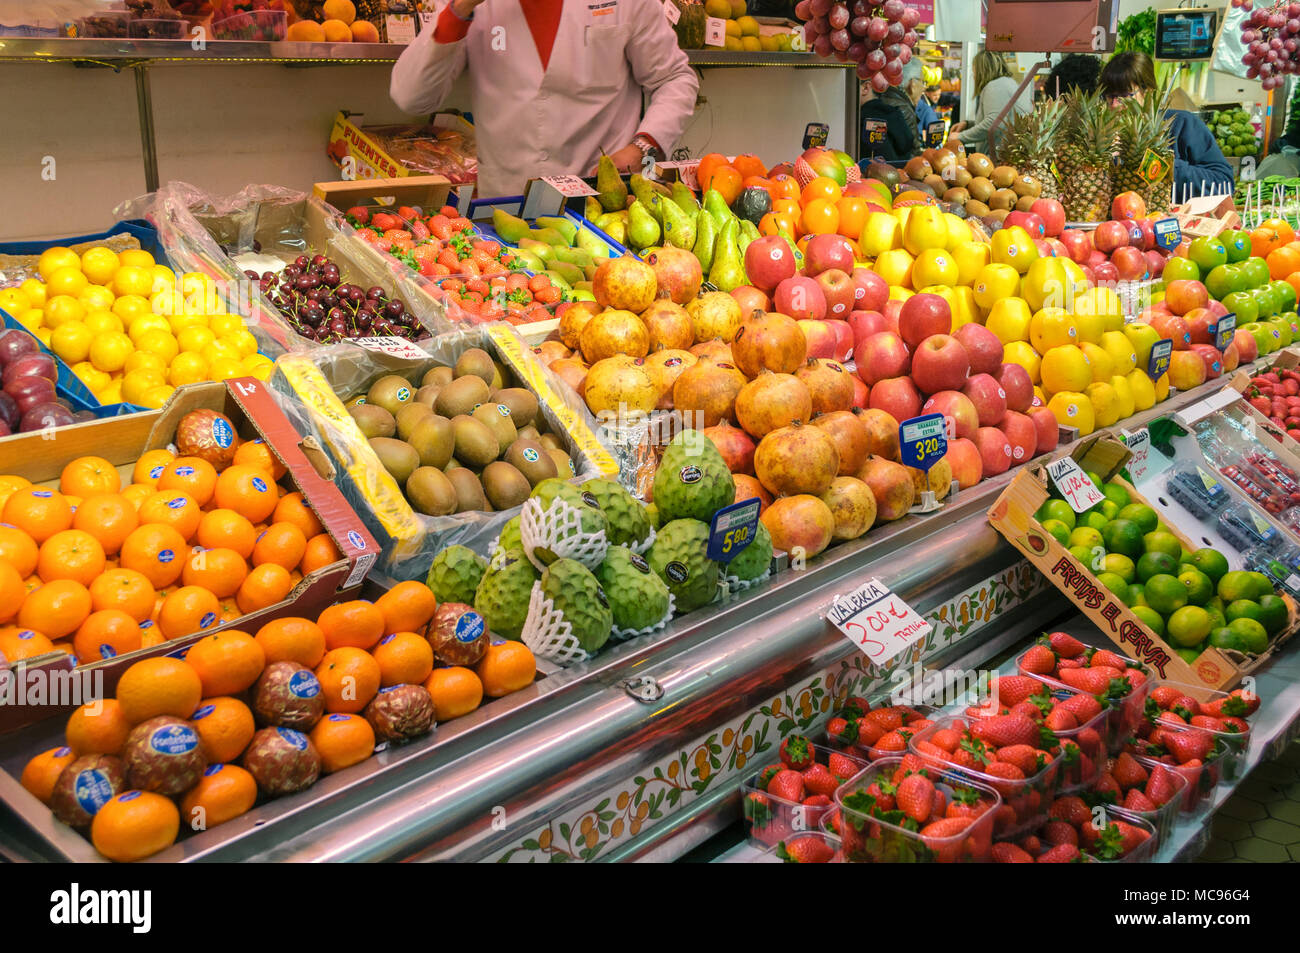 Valencia, Espagne - 24 Février 2018 : divers fruits au marché central de Valence, Espagne Banque D'Images